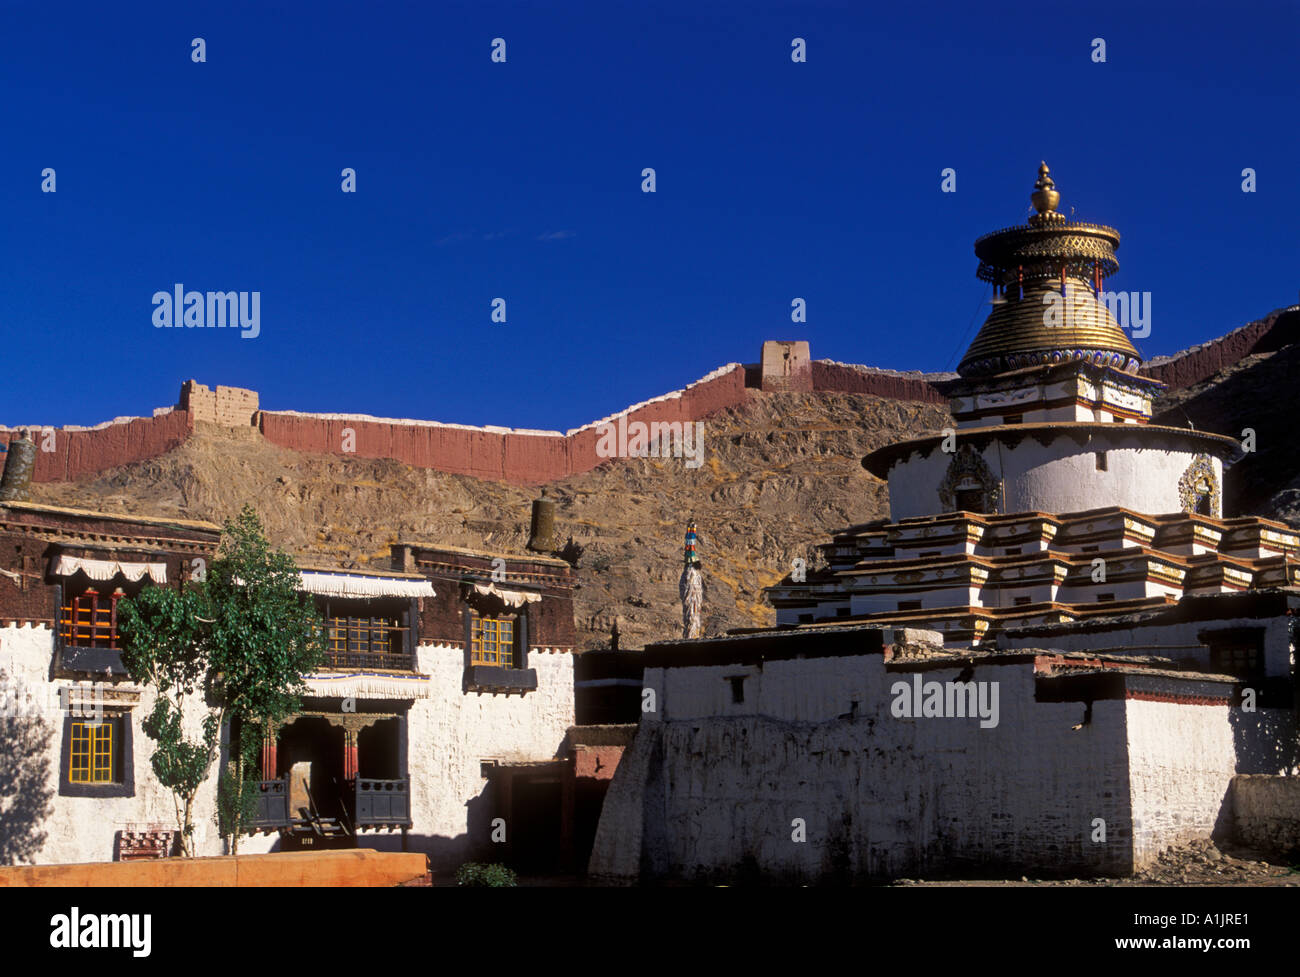 kumbum, chorten, Pelkor Chode Monastery, Buddhism, Buddhist monastery, Buddhist temple, temple, town of Gyantse, Tibet Autonomous Region, China, Asia Stock Photo